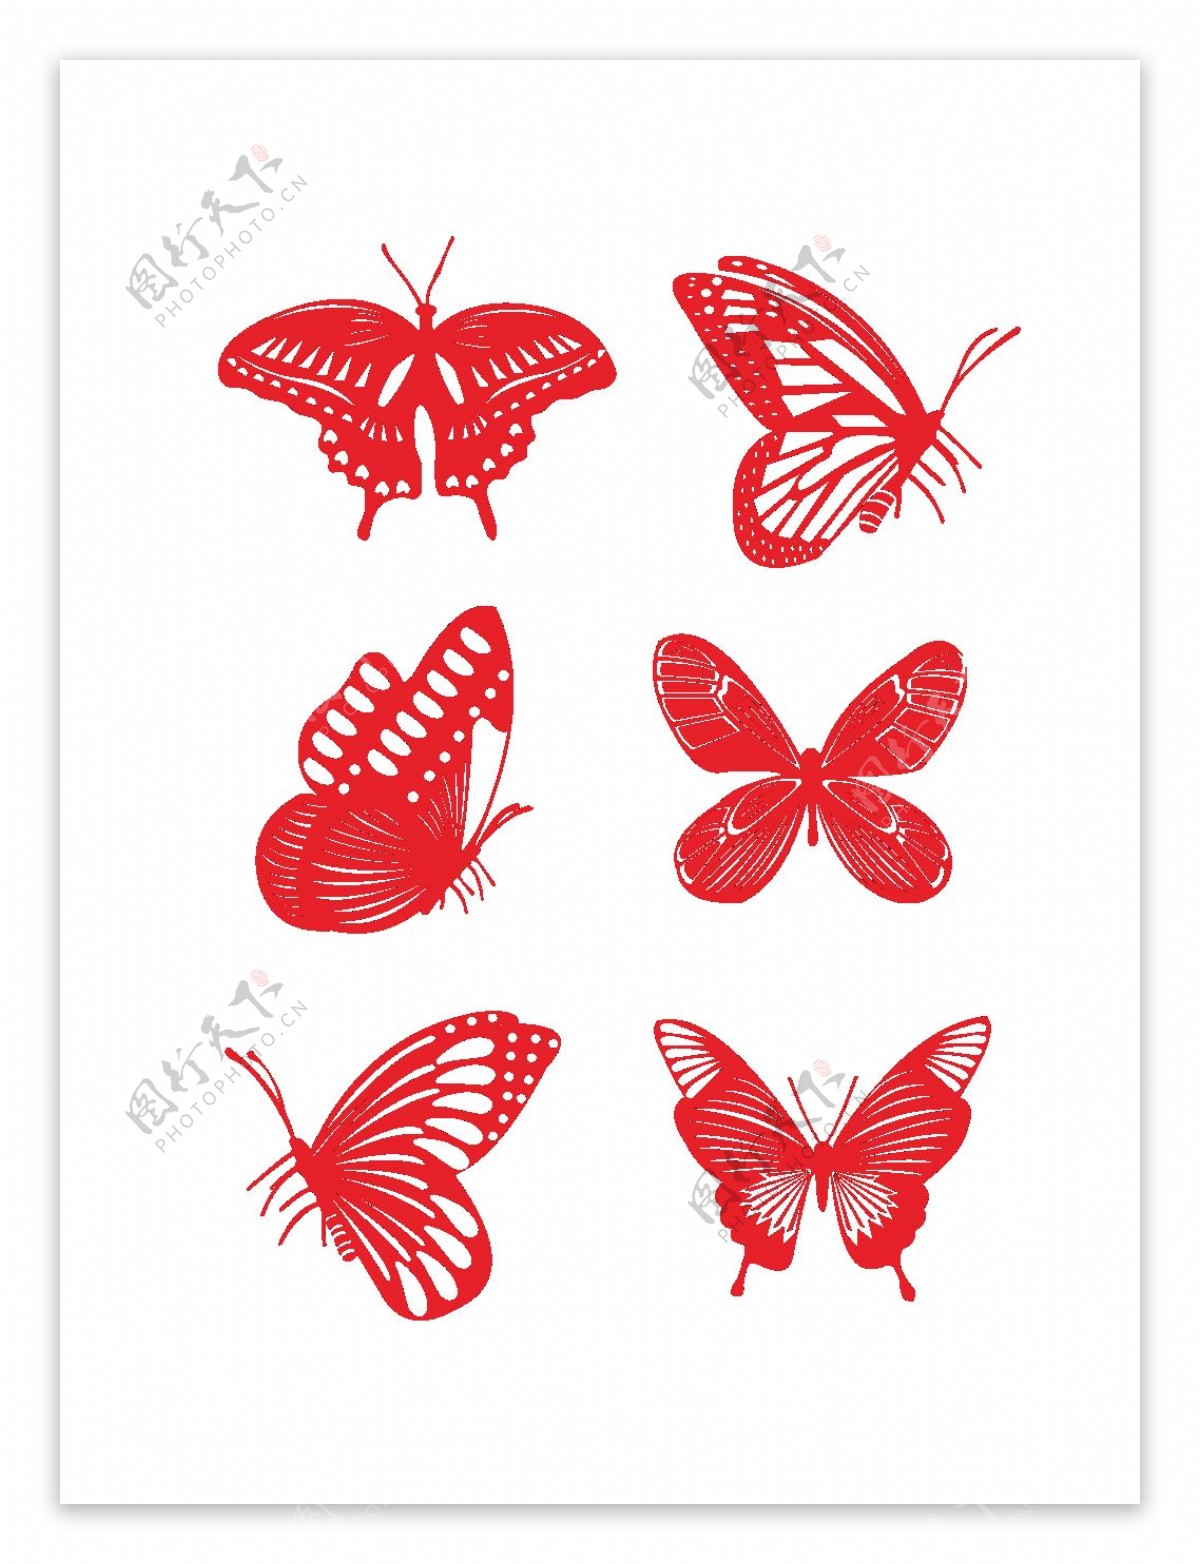 中国风蝴蝶剪纸元素之红色图案套图